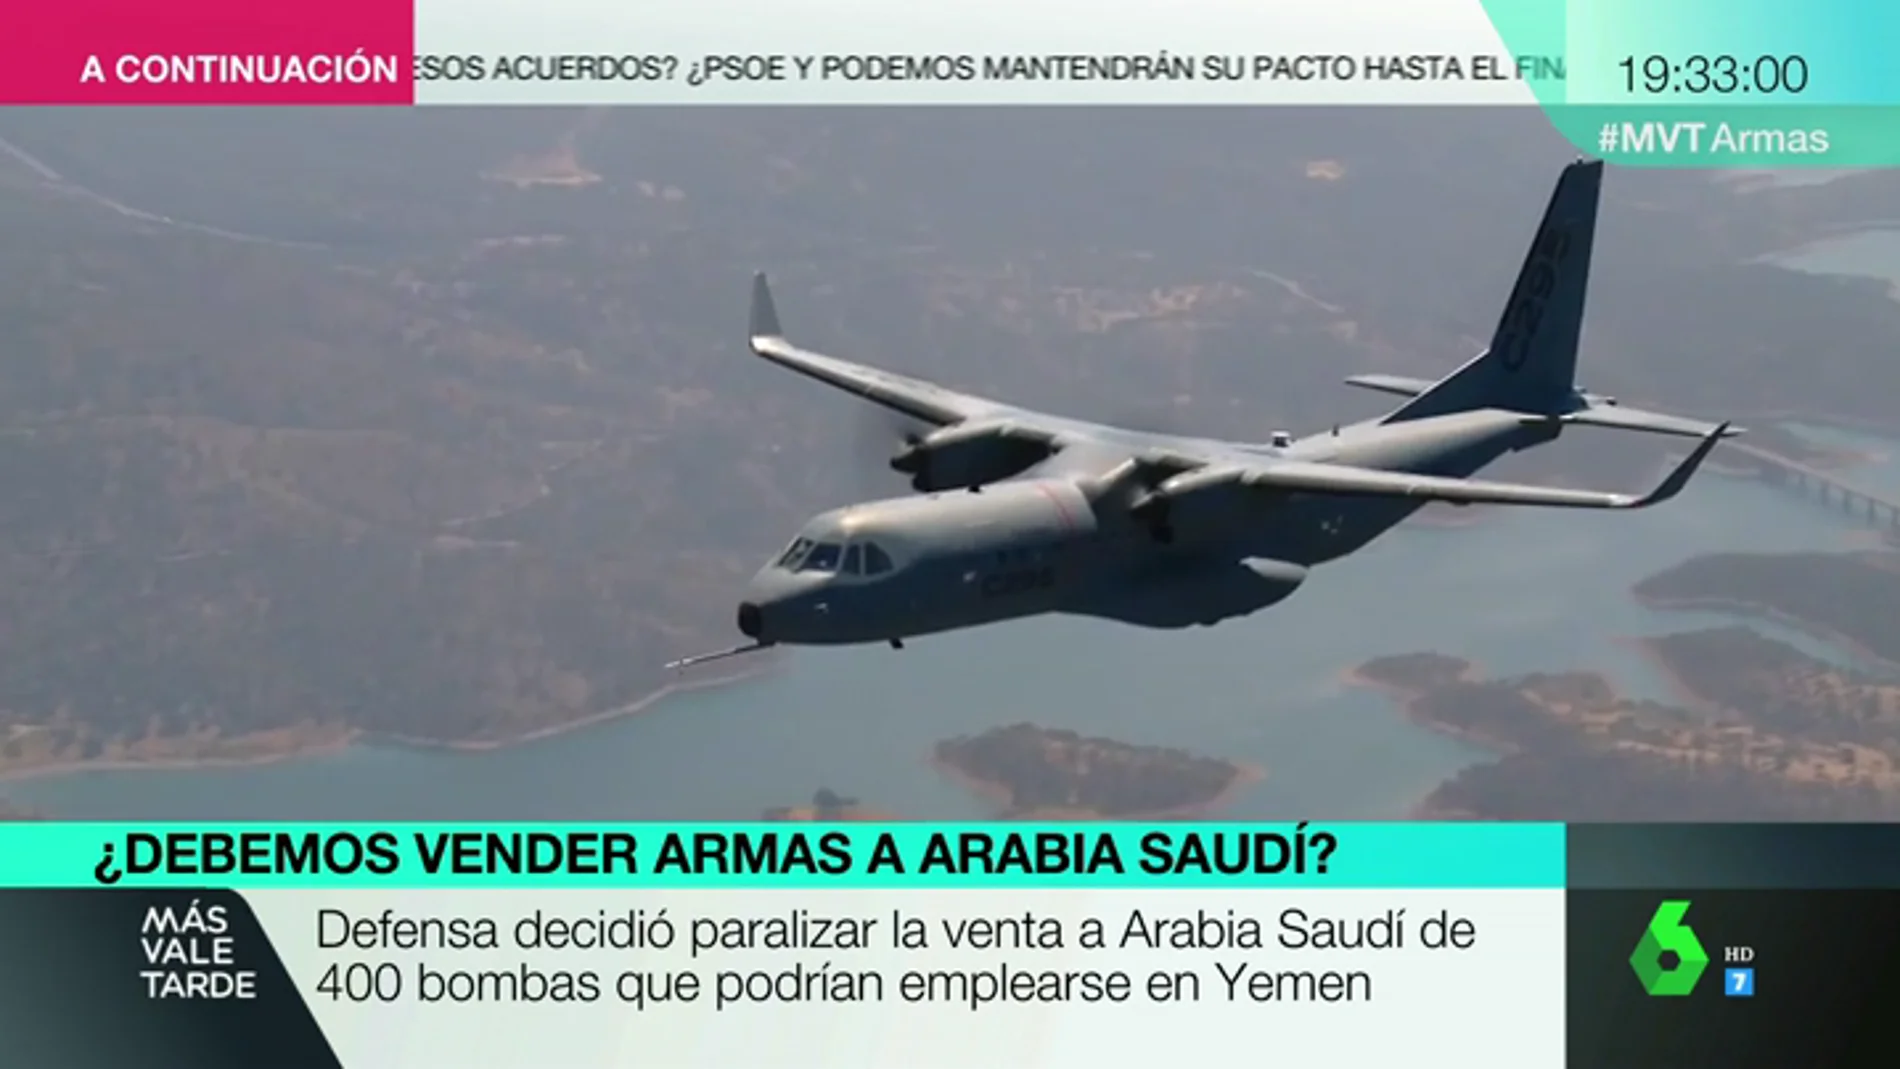 Un avión militar, drones, armas: estas son las ventas que ha hecho España a Arabia Saudí